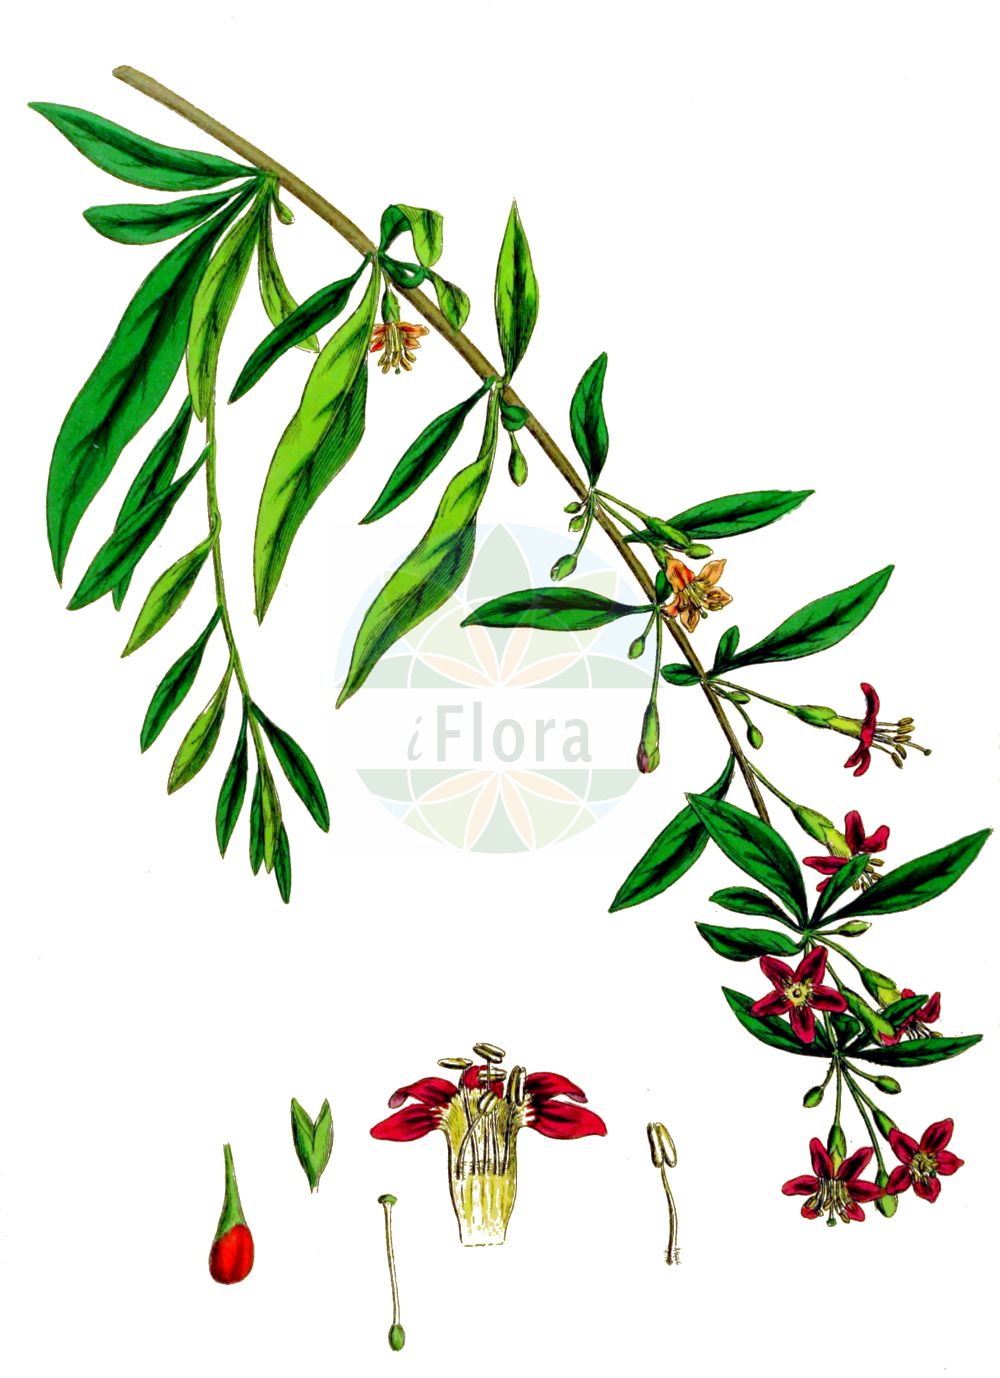 Historische Abbildung von Lycium barbarum (Gewöhnlicher Bocksdorn - Duke Of Argyll's Teaplant). Das Bild zeigt Blatt, Bluete, Frucht und Same. ---- Historical Drawing of Lycium barbarum (Gewöhnlicher Bocksdorn - Duke Of Argyll's Teaplant). The image is showing leaf, flower, fruit and seed.(Lycium barbarum,Gewöhnlicher Bocksdorn,Duke Of Argyll's Teaplant,Lycium barbarum,Lycium halimifolium,Lycium trewianum,Lycium vulgare,Teremis elliptica,Gewoehnlicher Bocksdorn,Duke Of Argyll's Teaplant,Box Thorn,Goji Berry,Matrimony Vine,Wolfberry,Lycium,Bocksdorn,Teaplants,Solanaceae,Nachtschattengewächse,Potato family,Blatt,Bluete,Frucht,Same,leaf,flower,fruit,seed,Sowerby (1790-1813))